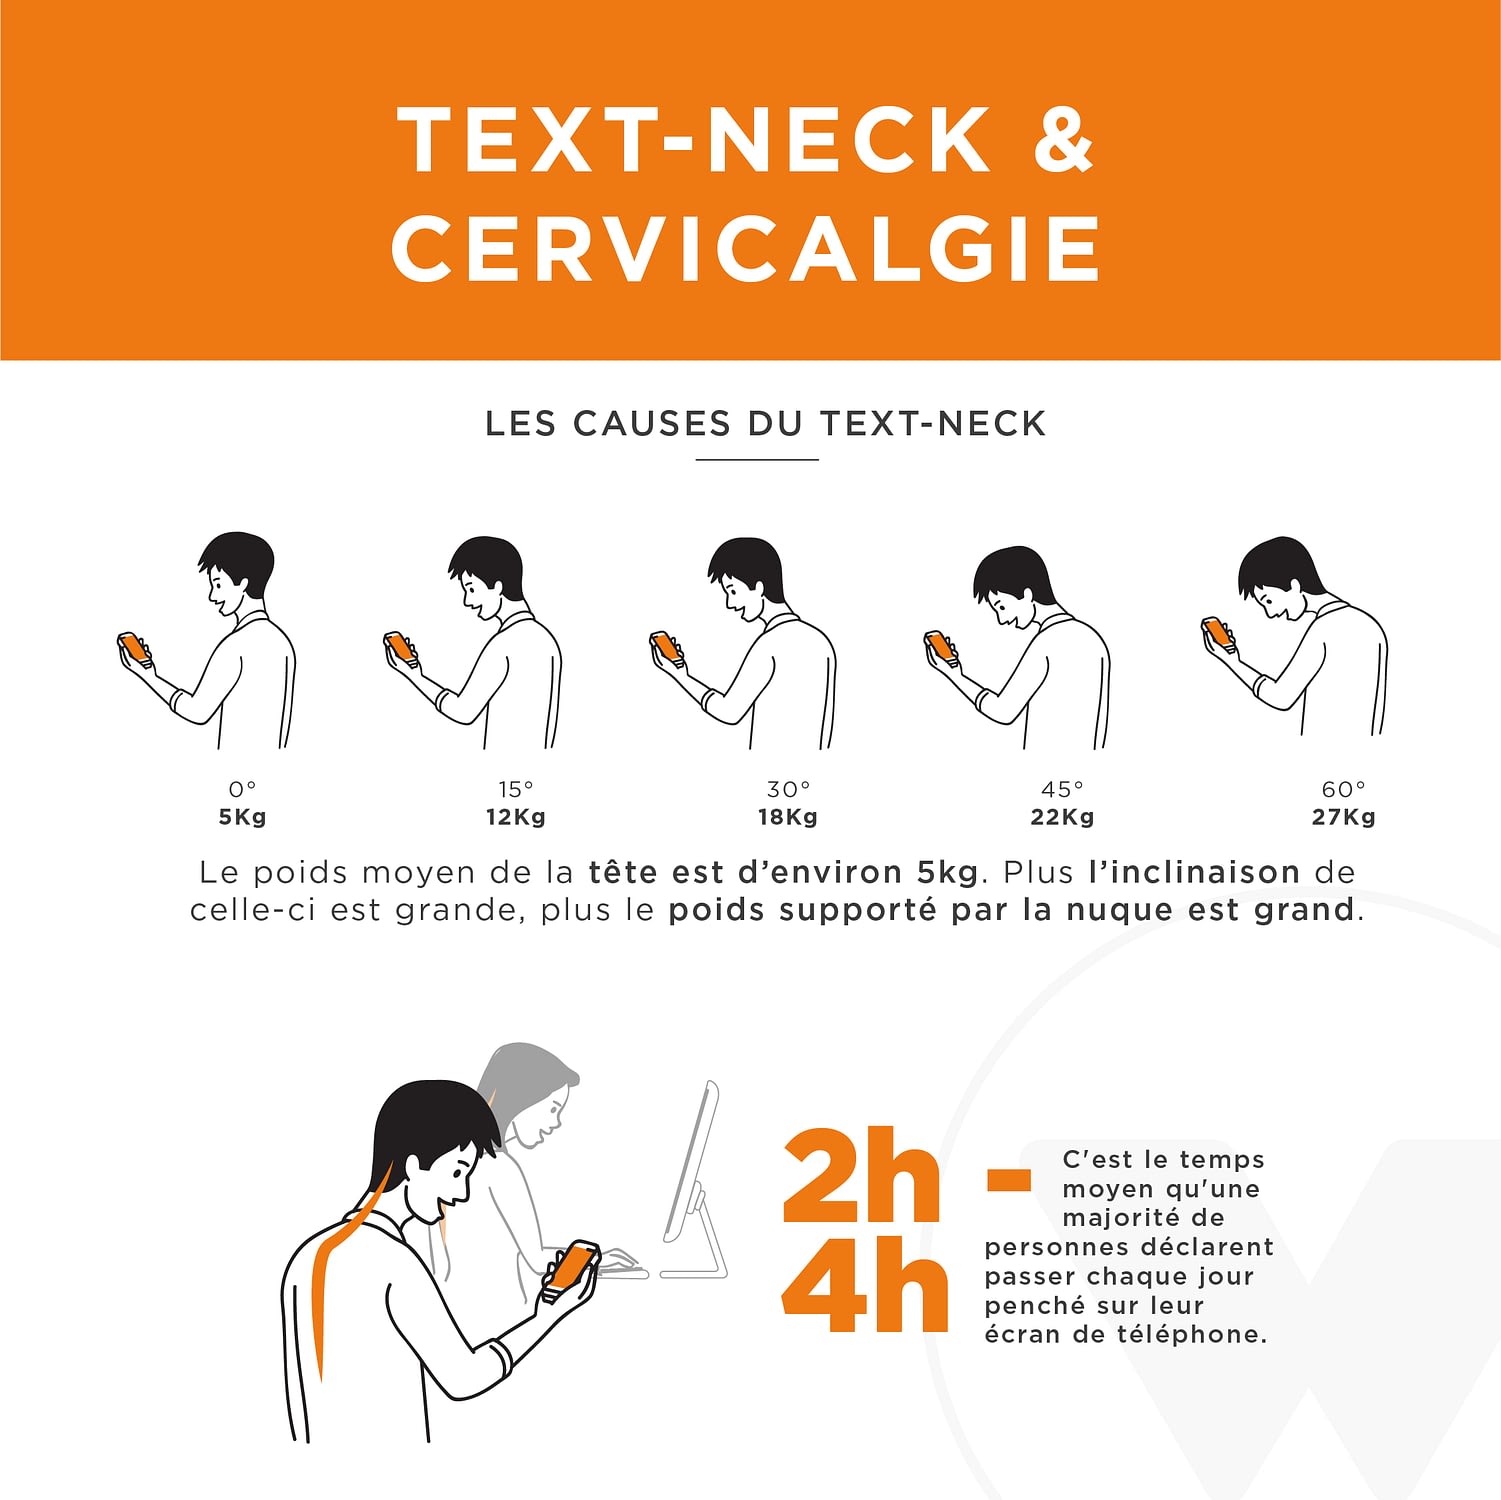 Cervicalgies text-neck